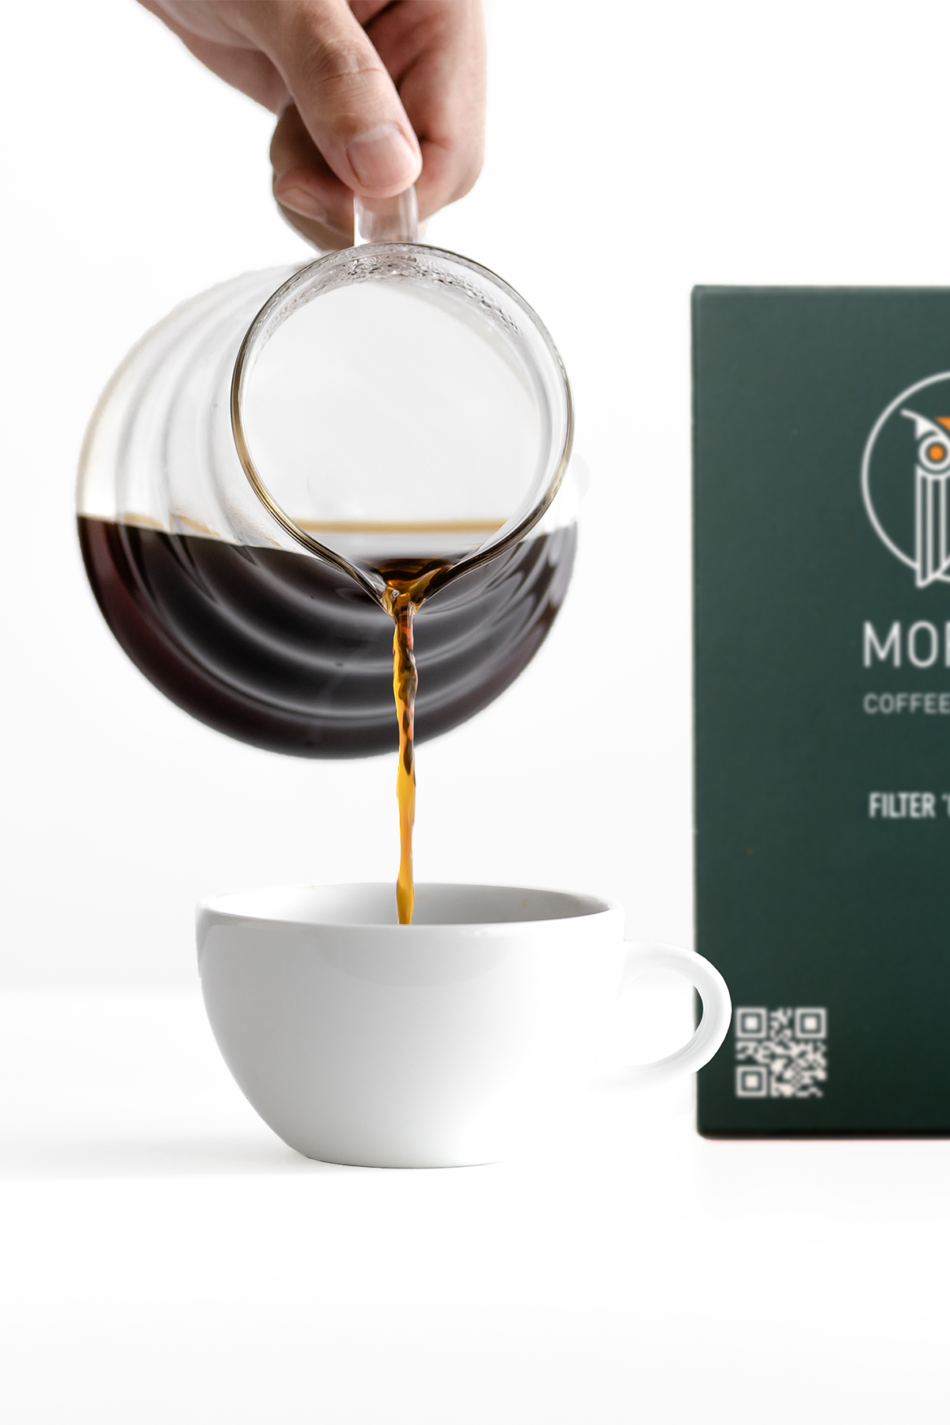 Mornin Coffee Co. Filtre Kahve v60 demleme